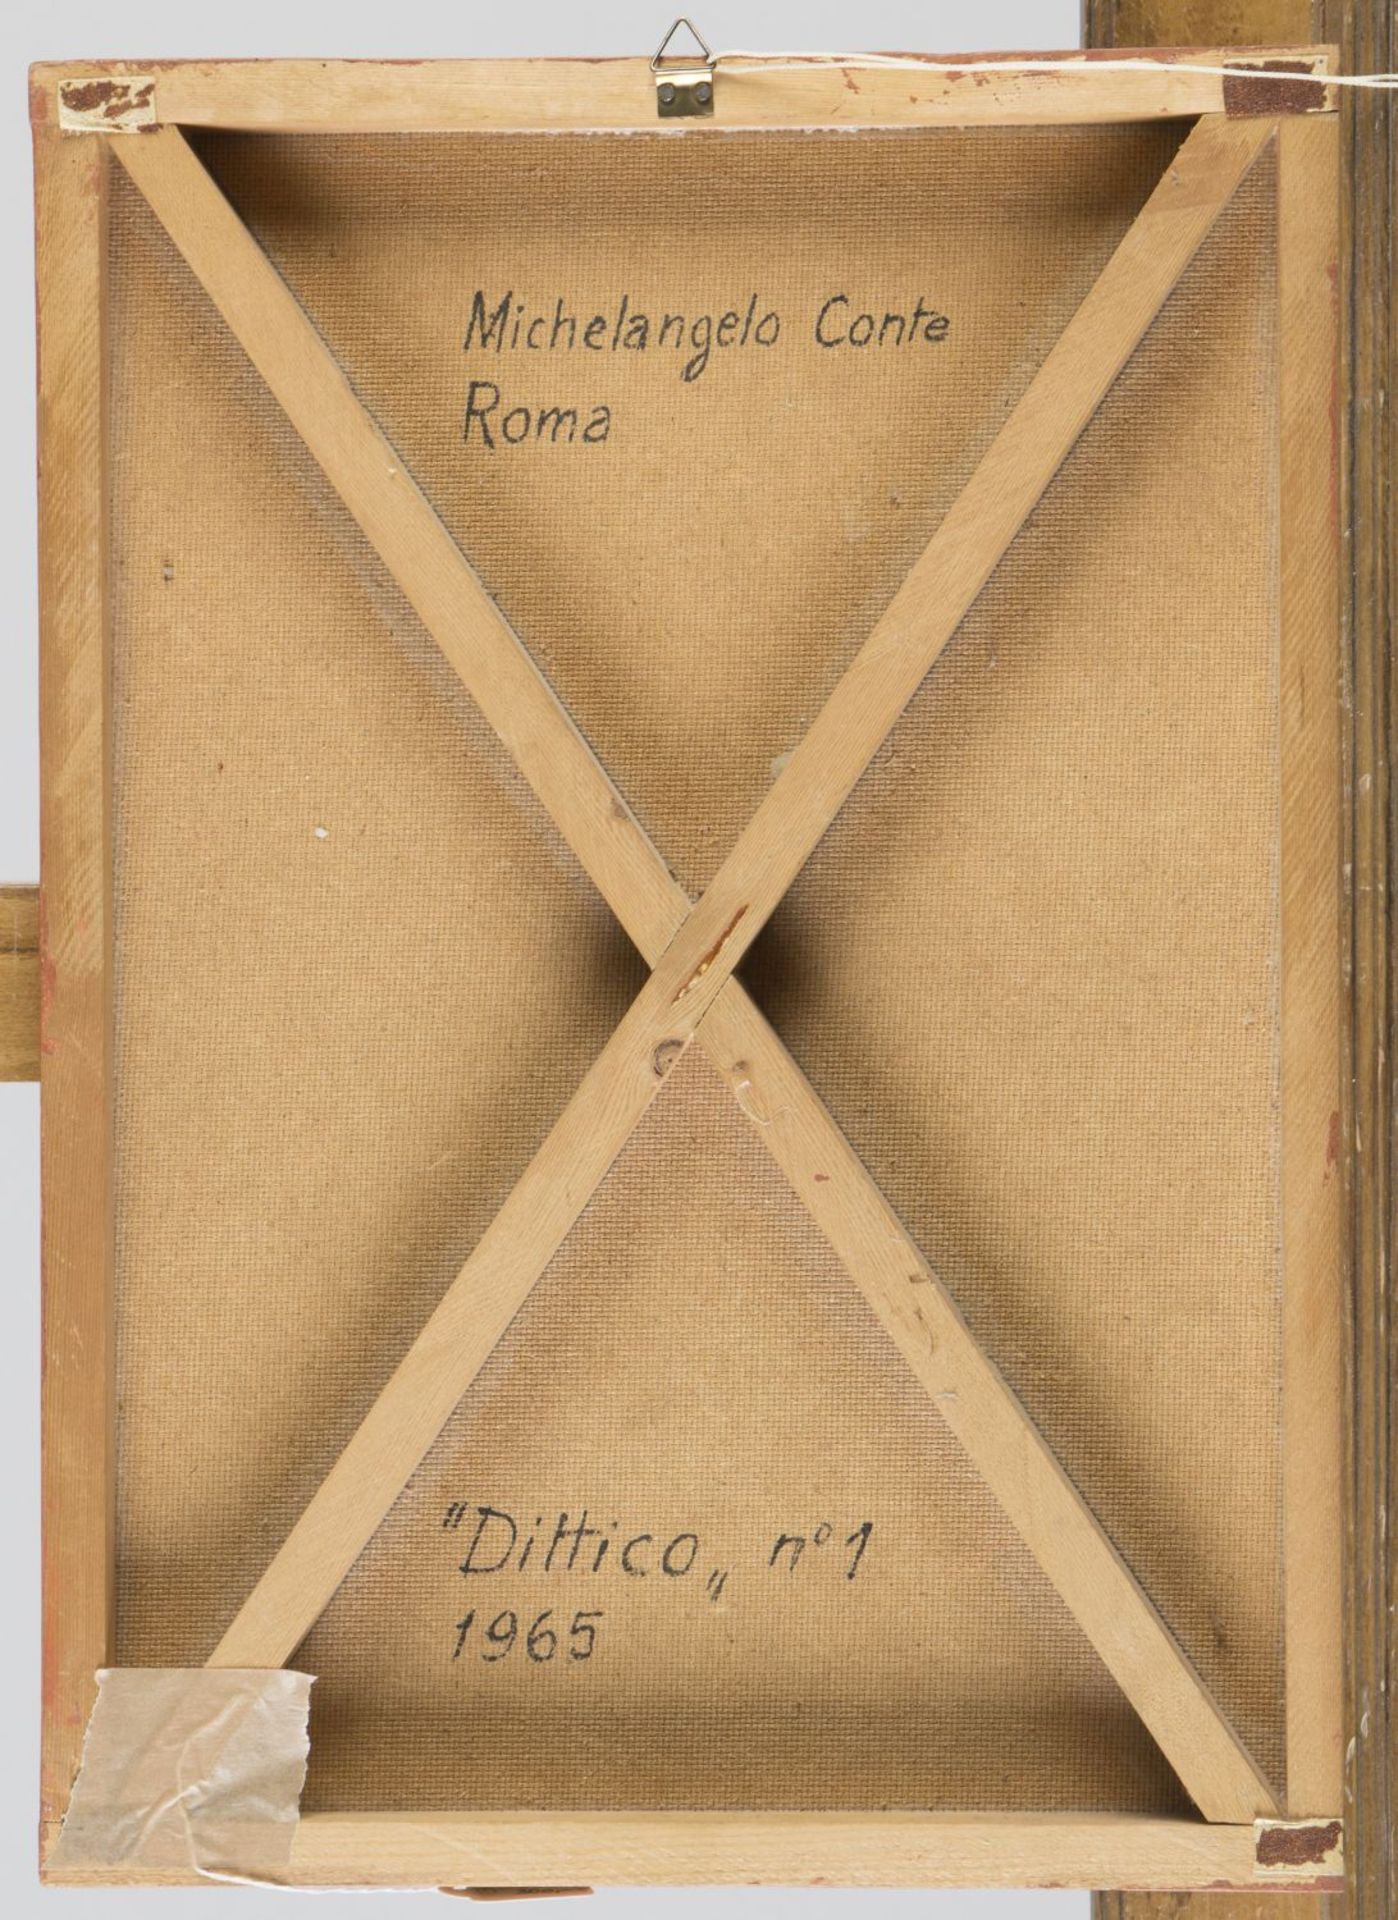 Conte, Michelangelo. 1913 - 1996 Dittico Nr. 1. Blech, Holz, Sand u.a. auf Hartfaser. 46 x 33 cm. Ve - Bild 2 aus 2